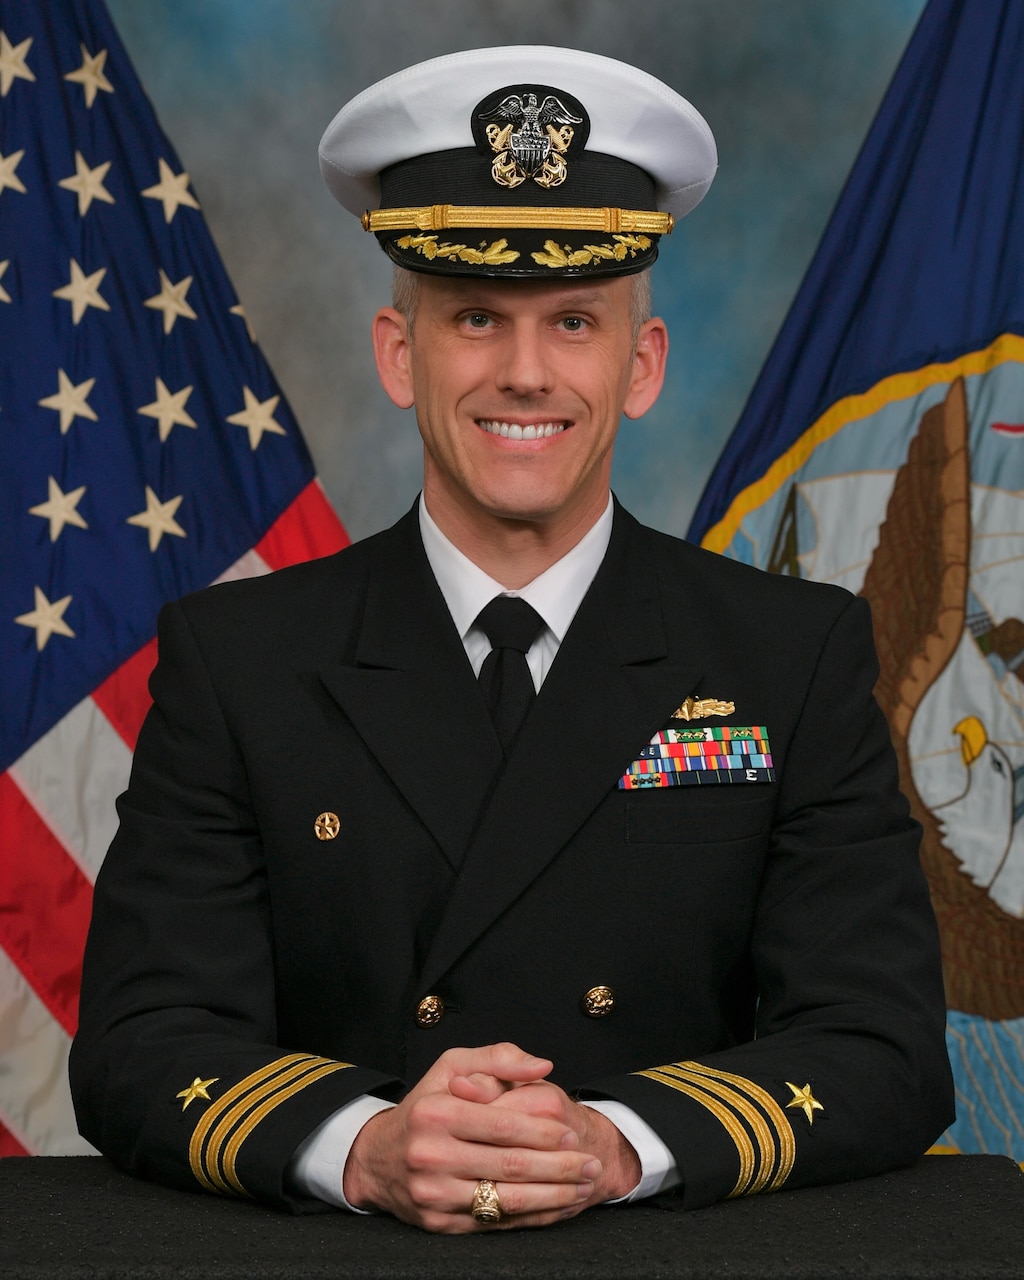 Commander Samuel Moffett